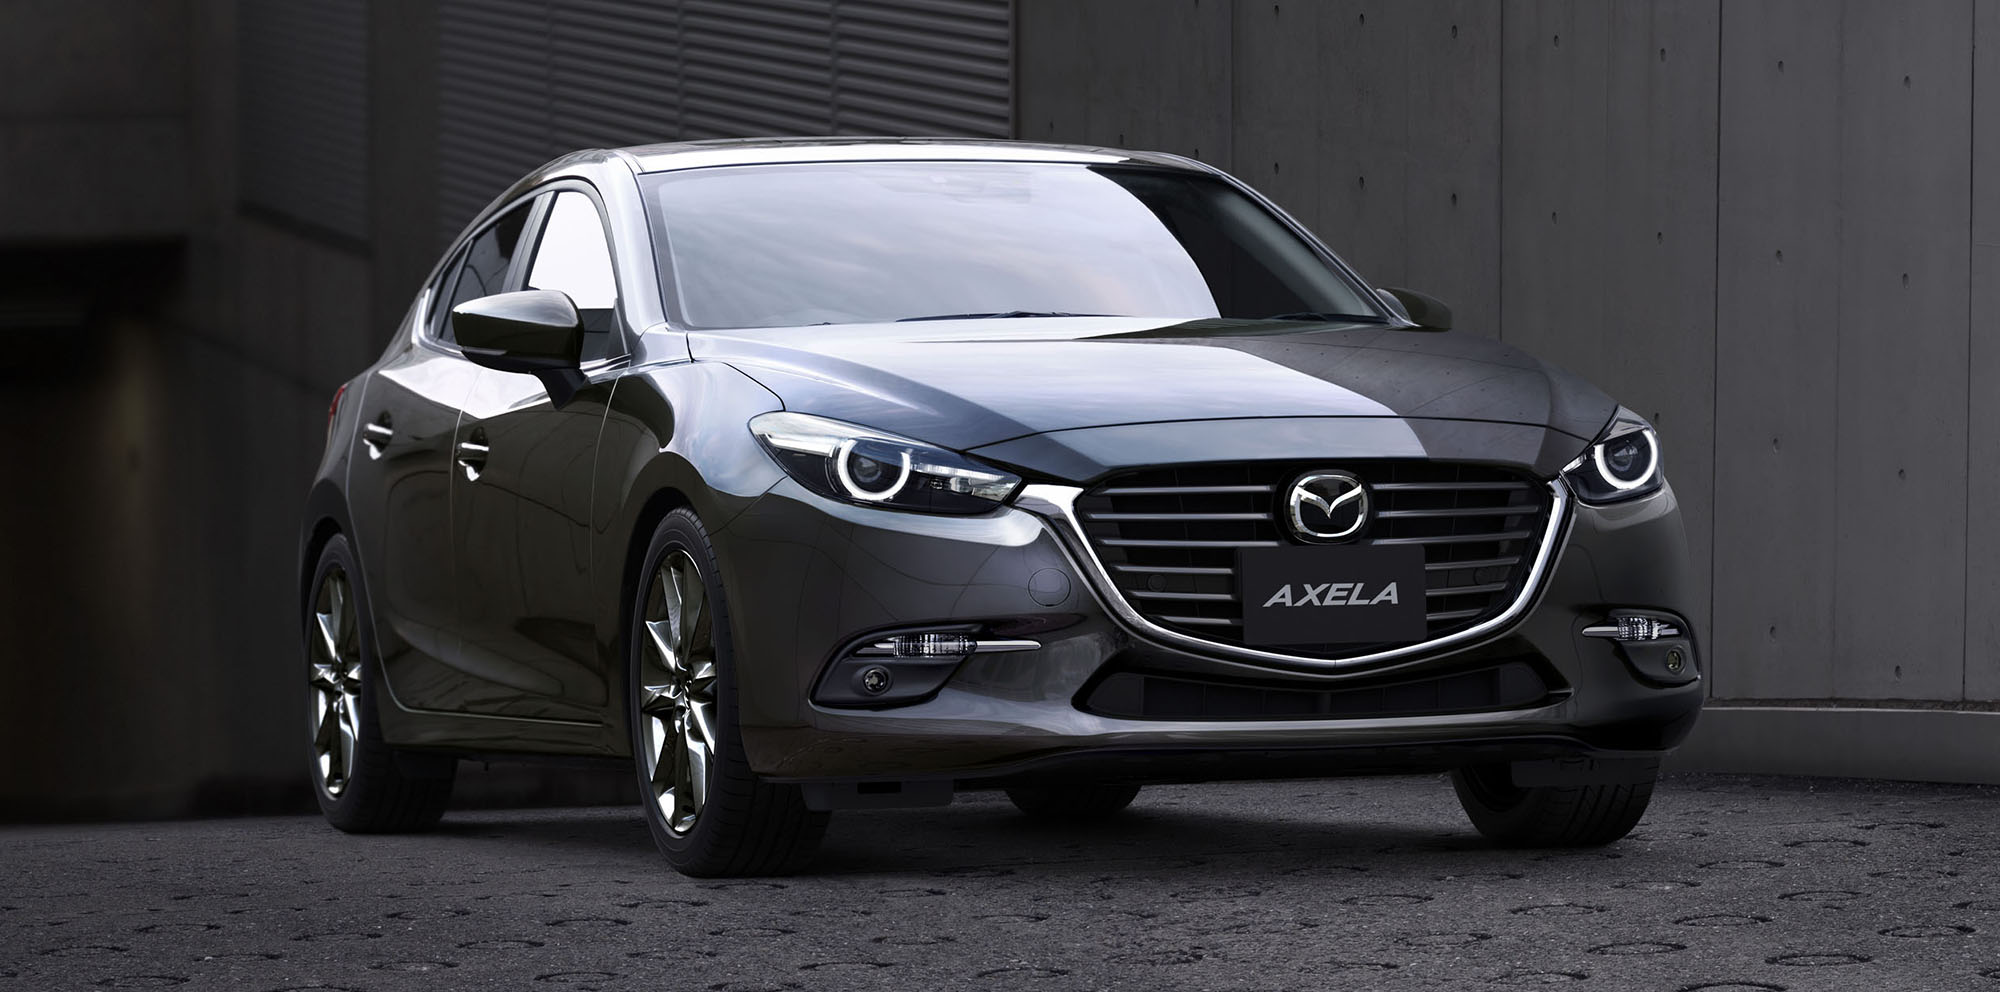 Hôm qua (ngày 14/7), Mazda Nhật Bản chính thức trình làng Mazda3 2017 với nhiều cải tiến cho cả hai dòng sedan và hatchback. Tại đất nước mặt trời mọc, Mazda3 còn có tên gọi khác là Axela.